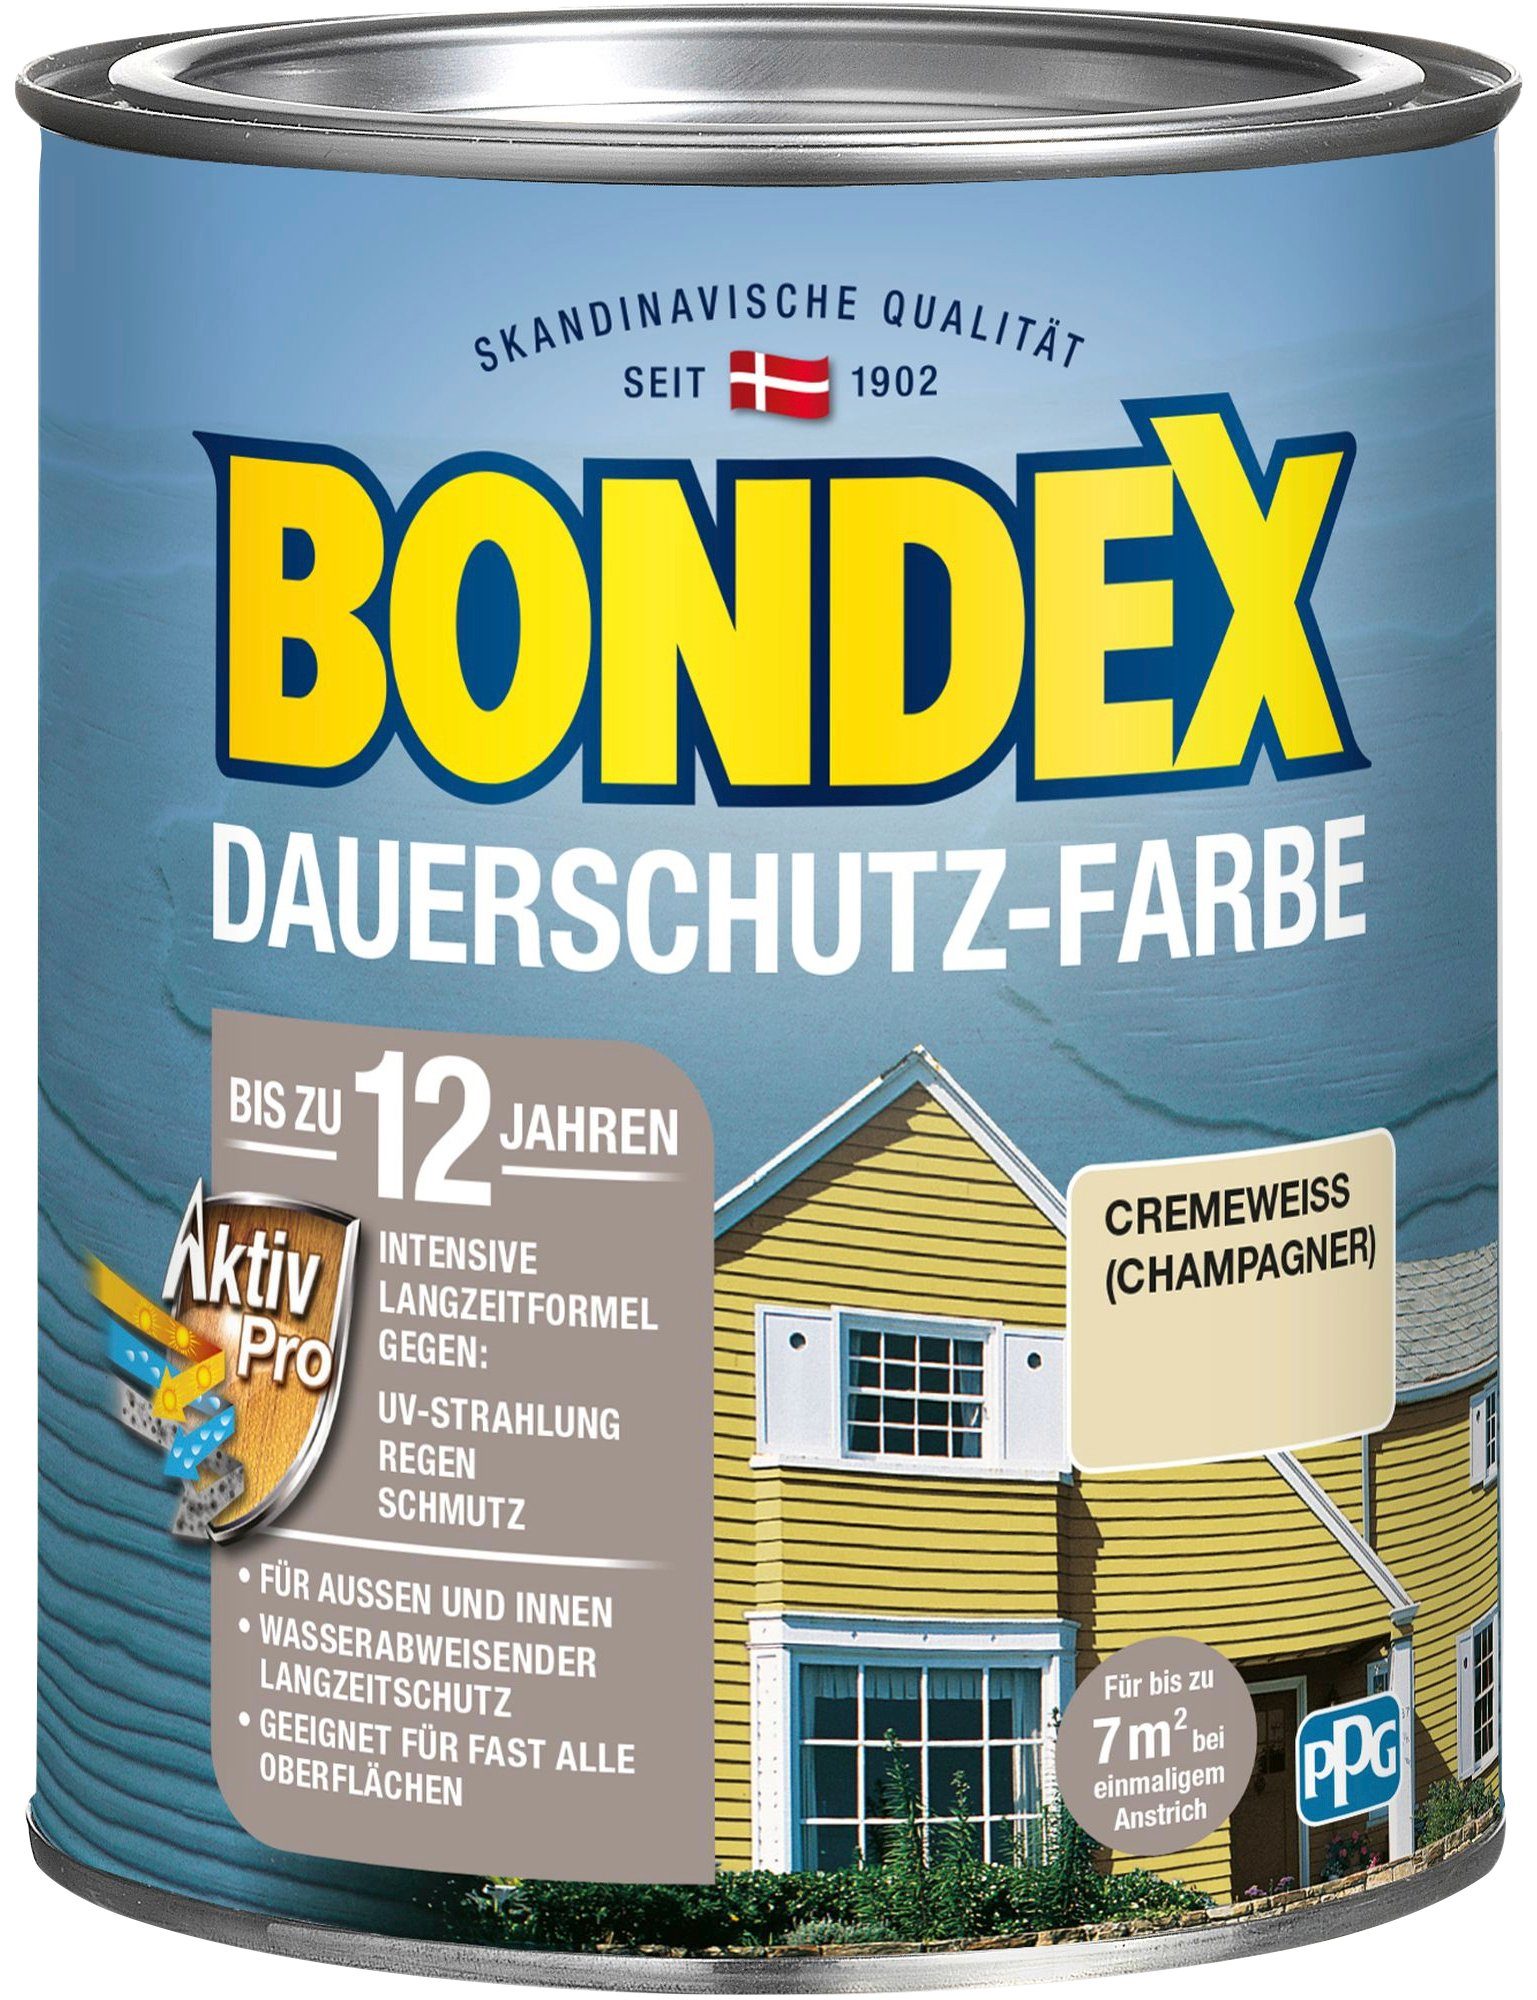 Bondex Wetterschutzfarbe DAUERSCHUTZ-FARBE, für Außen und Innen, Wetterschutz mit Aktiv Pro Langzeitformel cremefarben